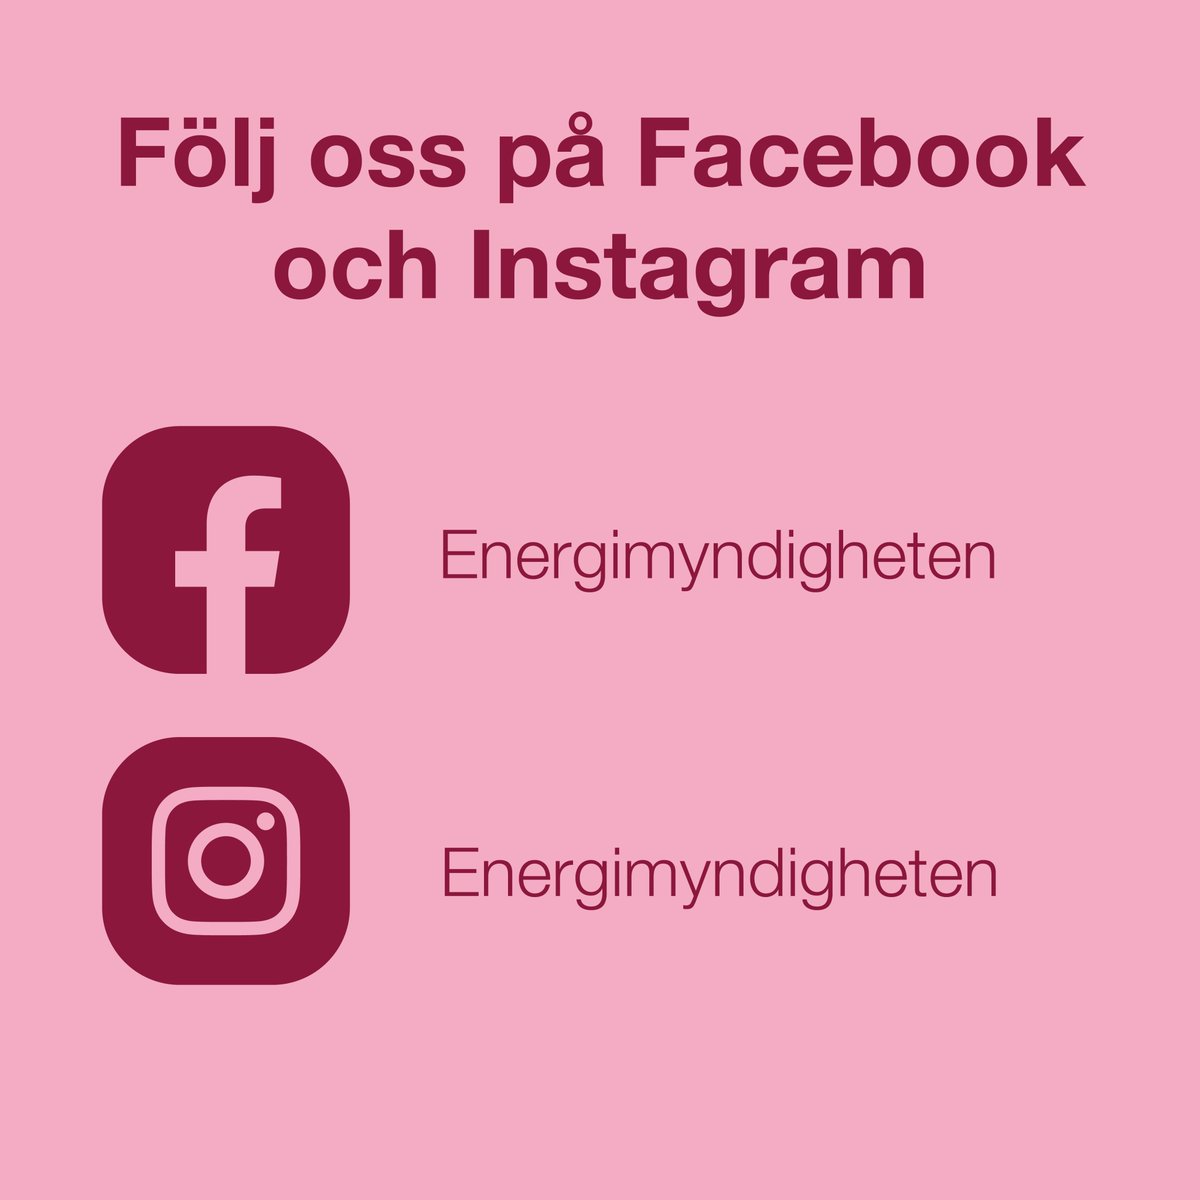 Följ Energimyndigheten på Facebook och Instagram för att få uppdateringar om kunskap och frågor vi jobbar med som riktar sig till en bredare allmänhet. Facebook: bit.ly/3ytuaTo Instagram: bit.ly/3CNrmmO